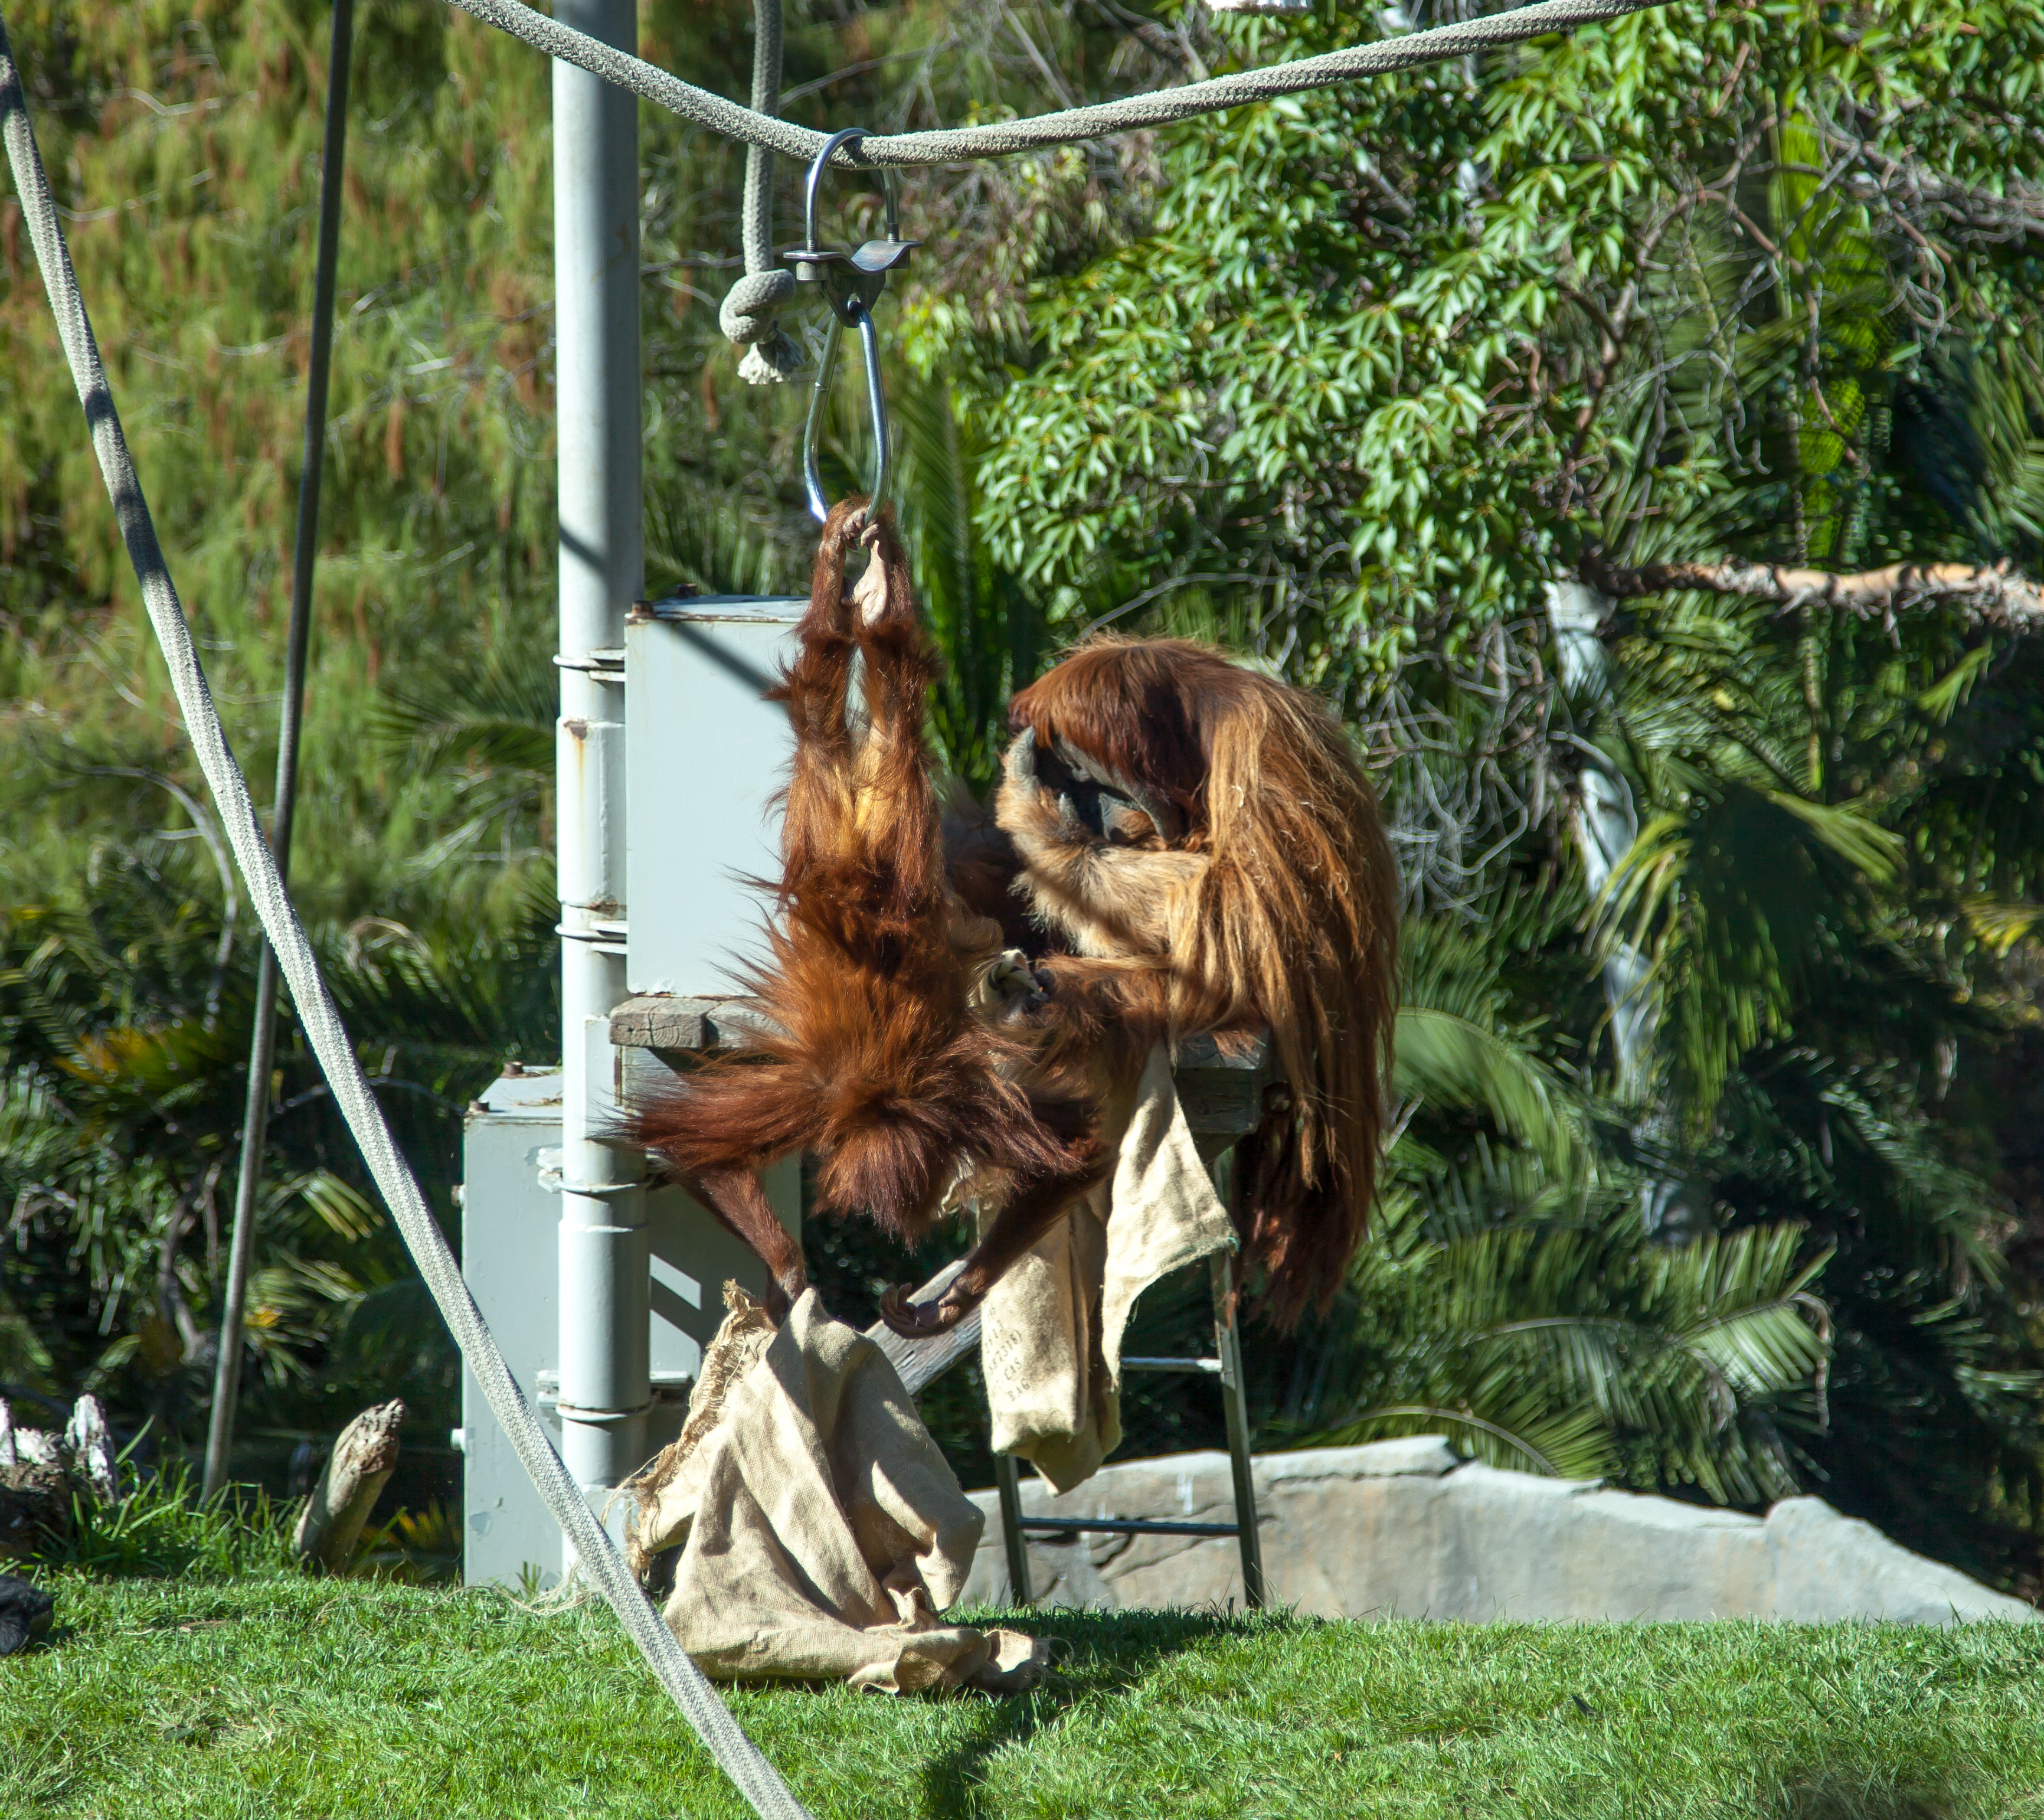 some orangutans